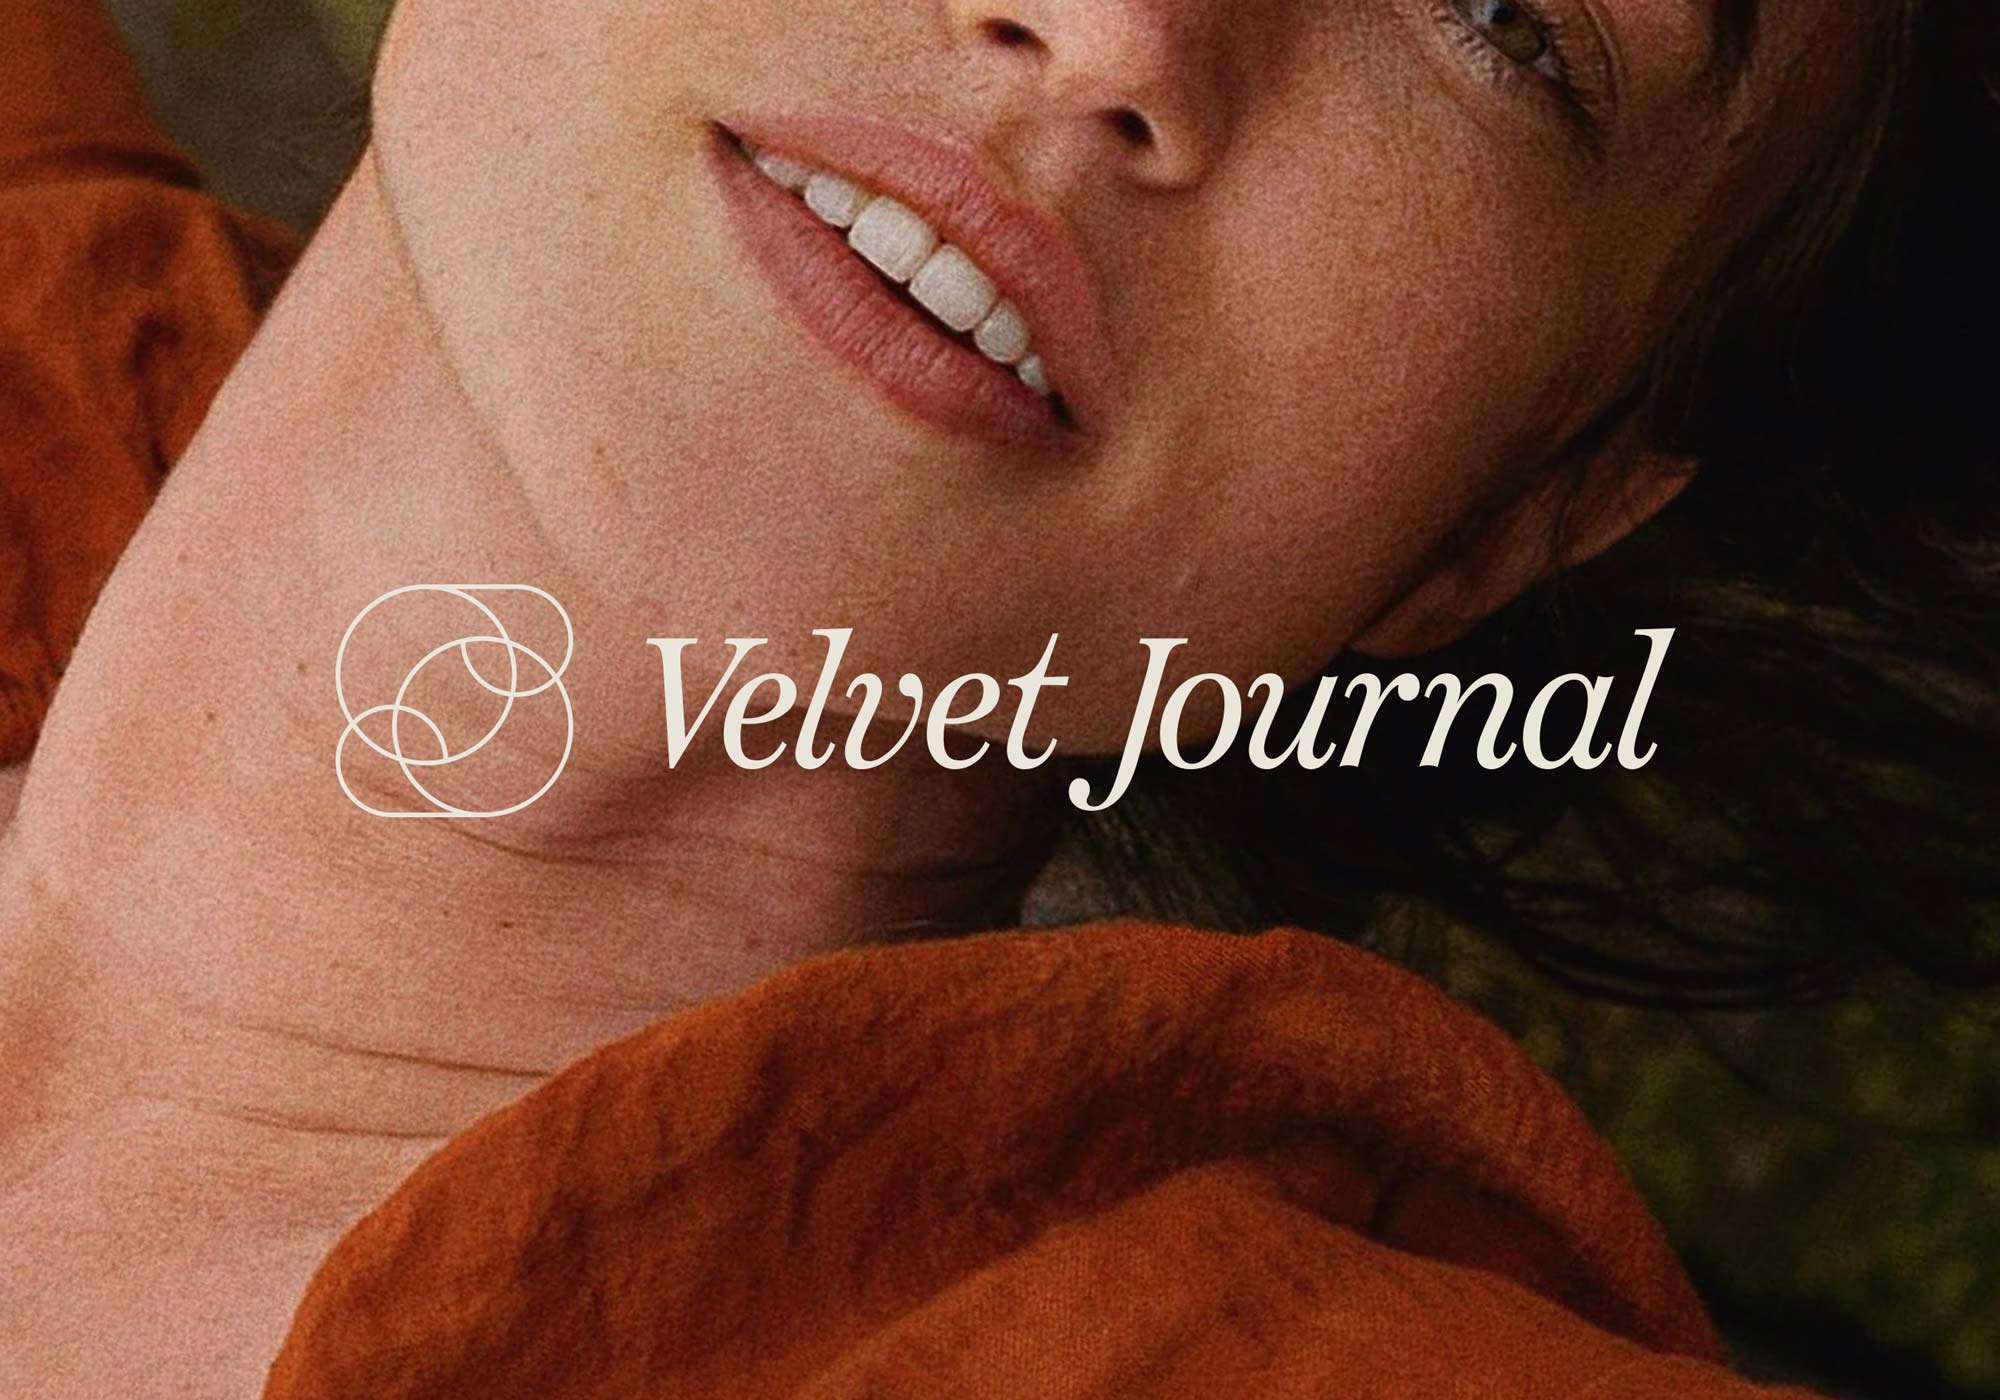 Velvet Journal by The Brand Bazaar